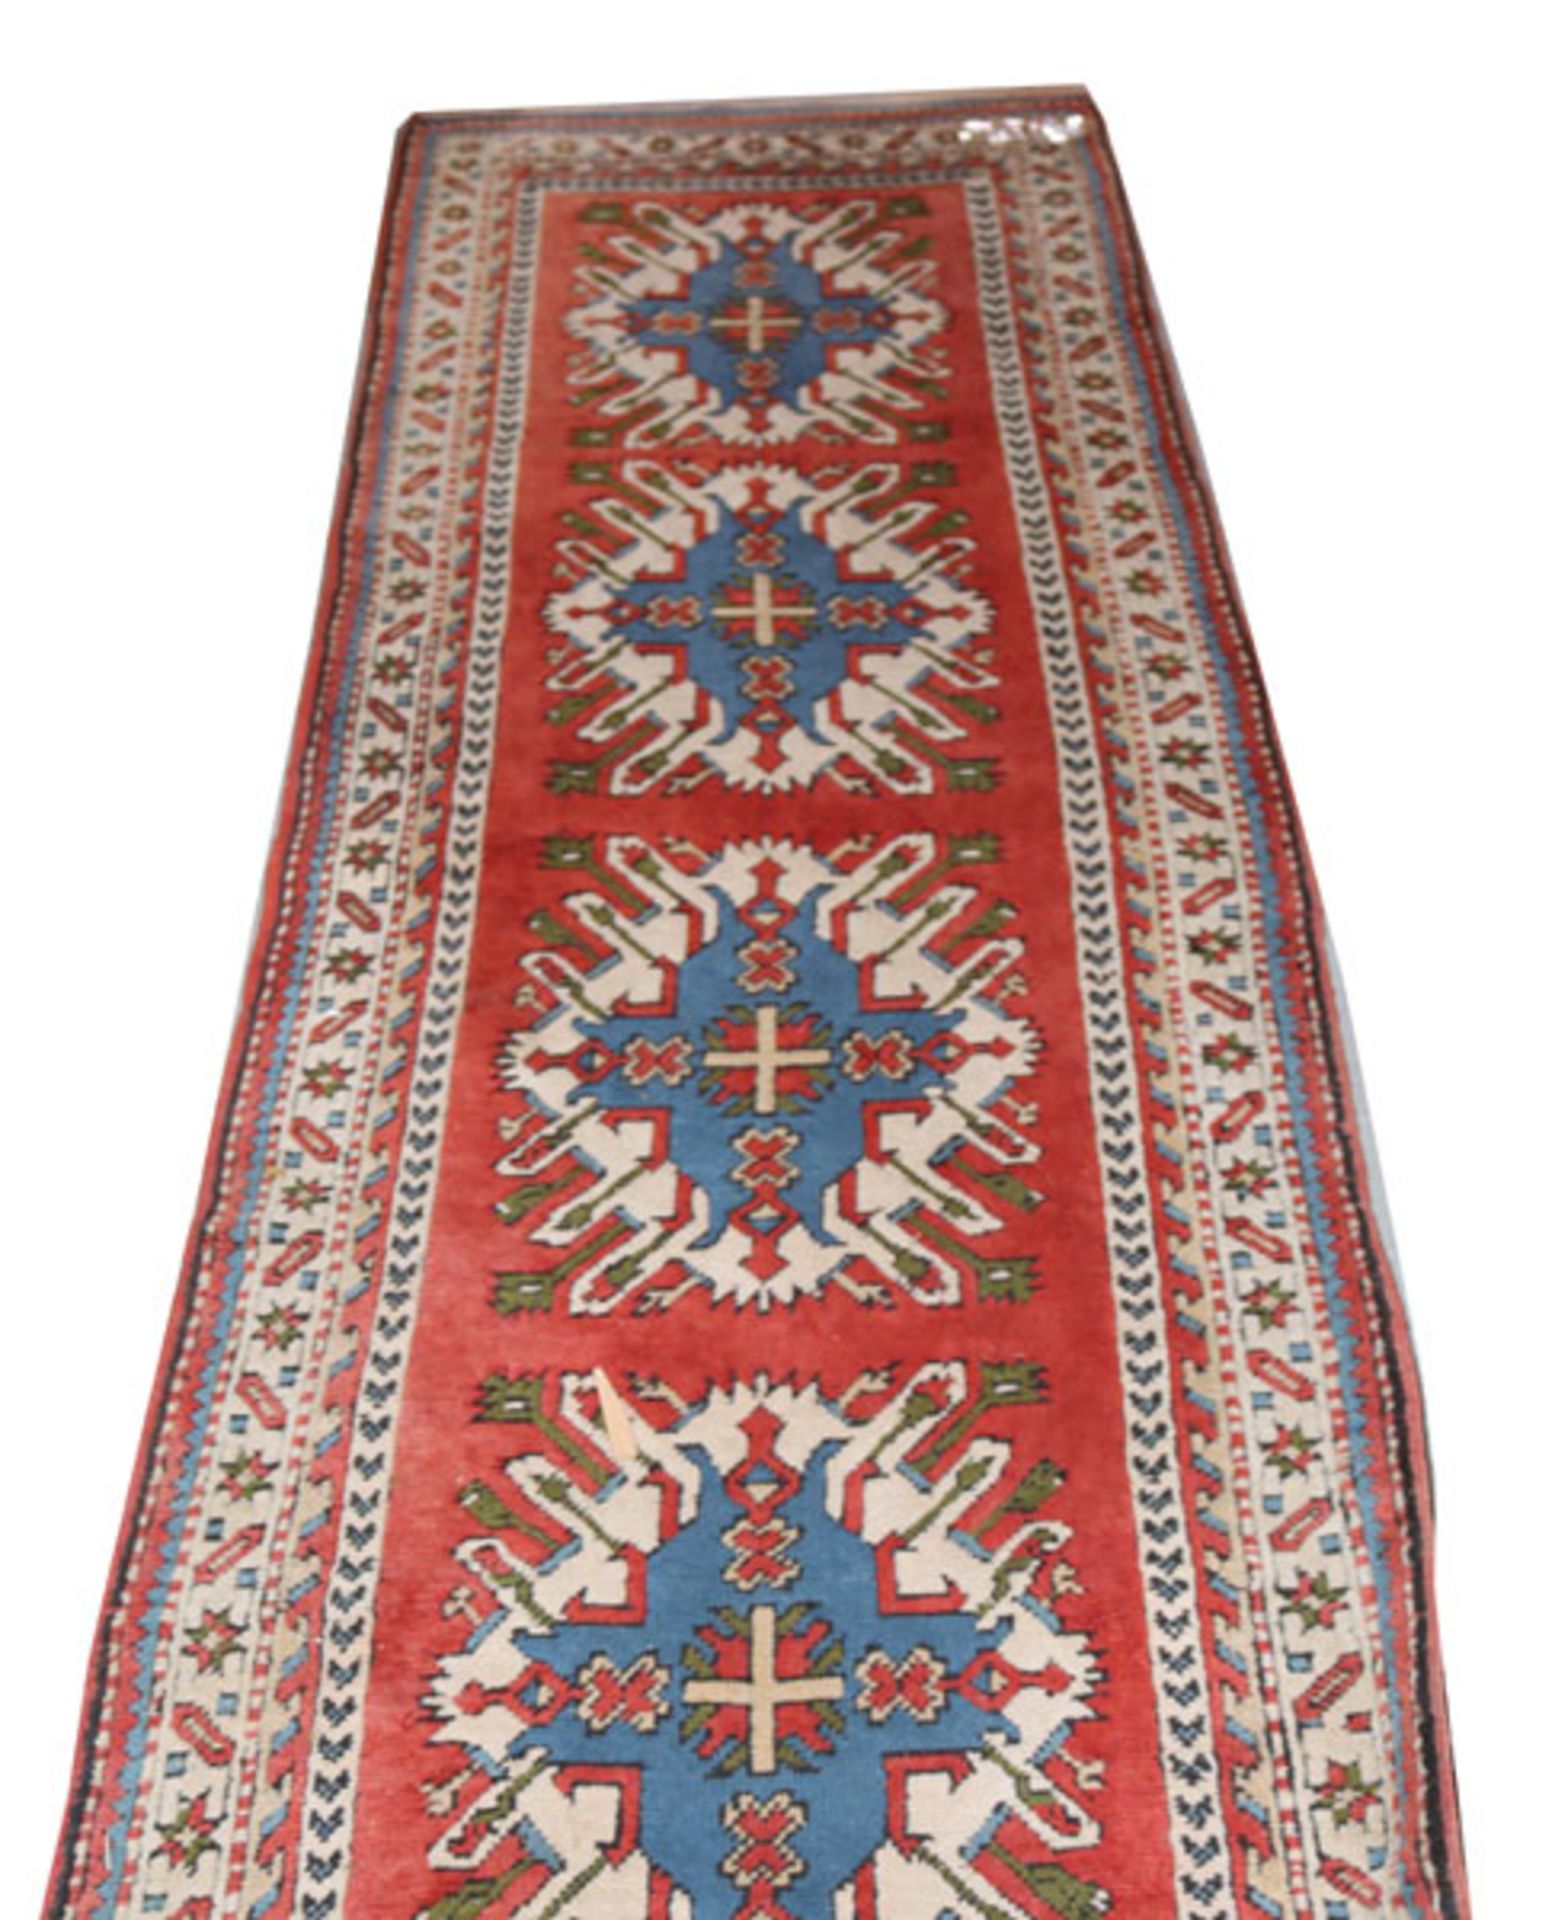 Läufer, Kars-Kazak, rot/blau/beige, abgetreten, starke Gebrauchsspuren, 408 cm x 90 cm